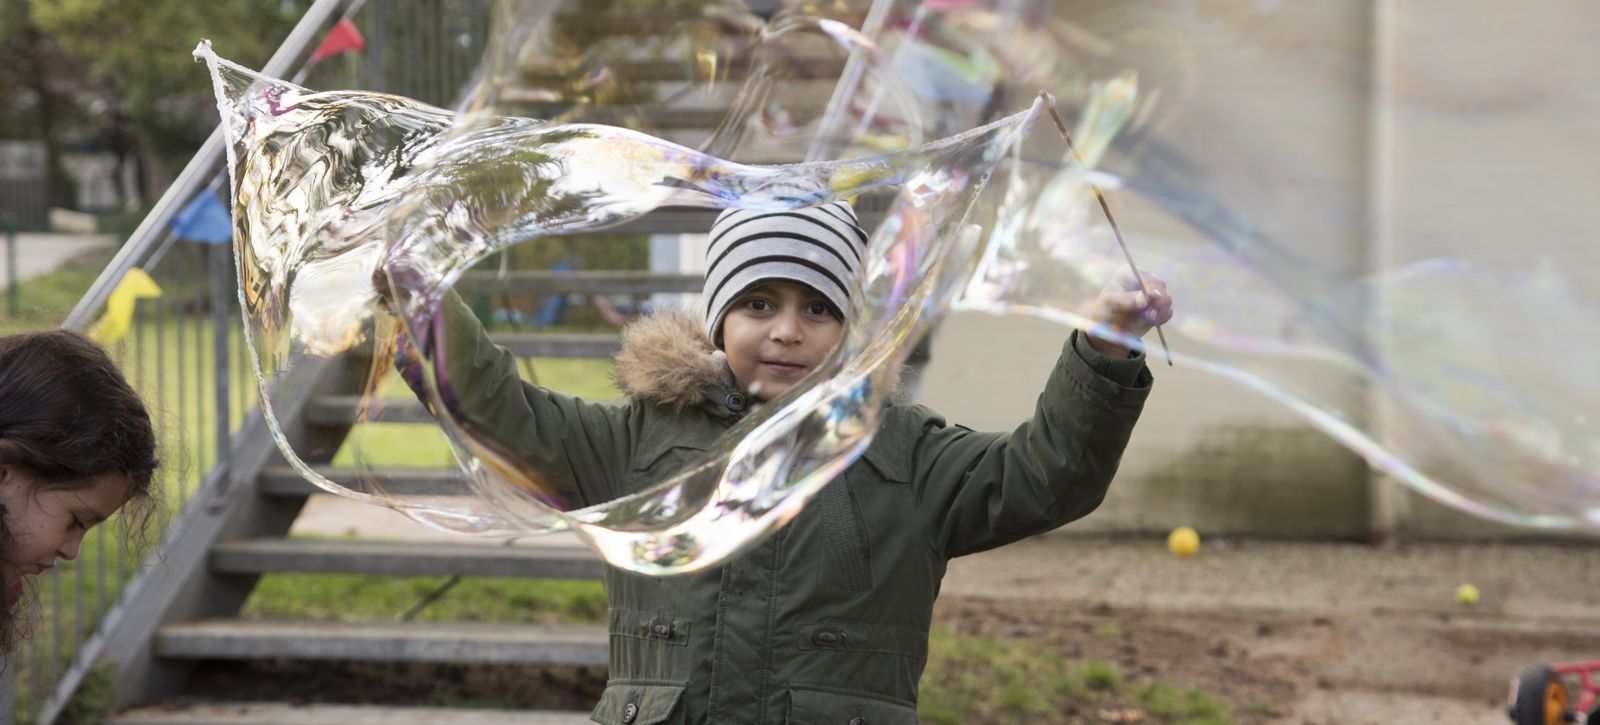 Ein Kind macht Riesenluftblasen.